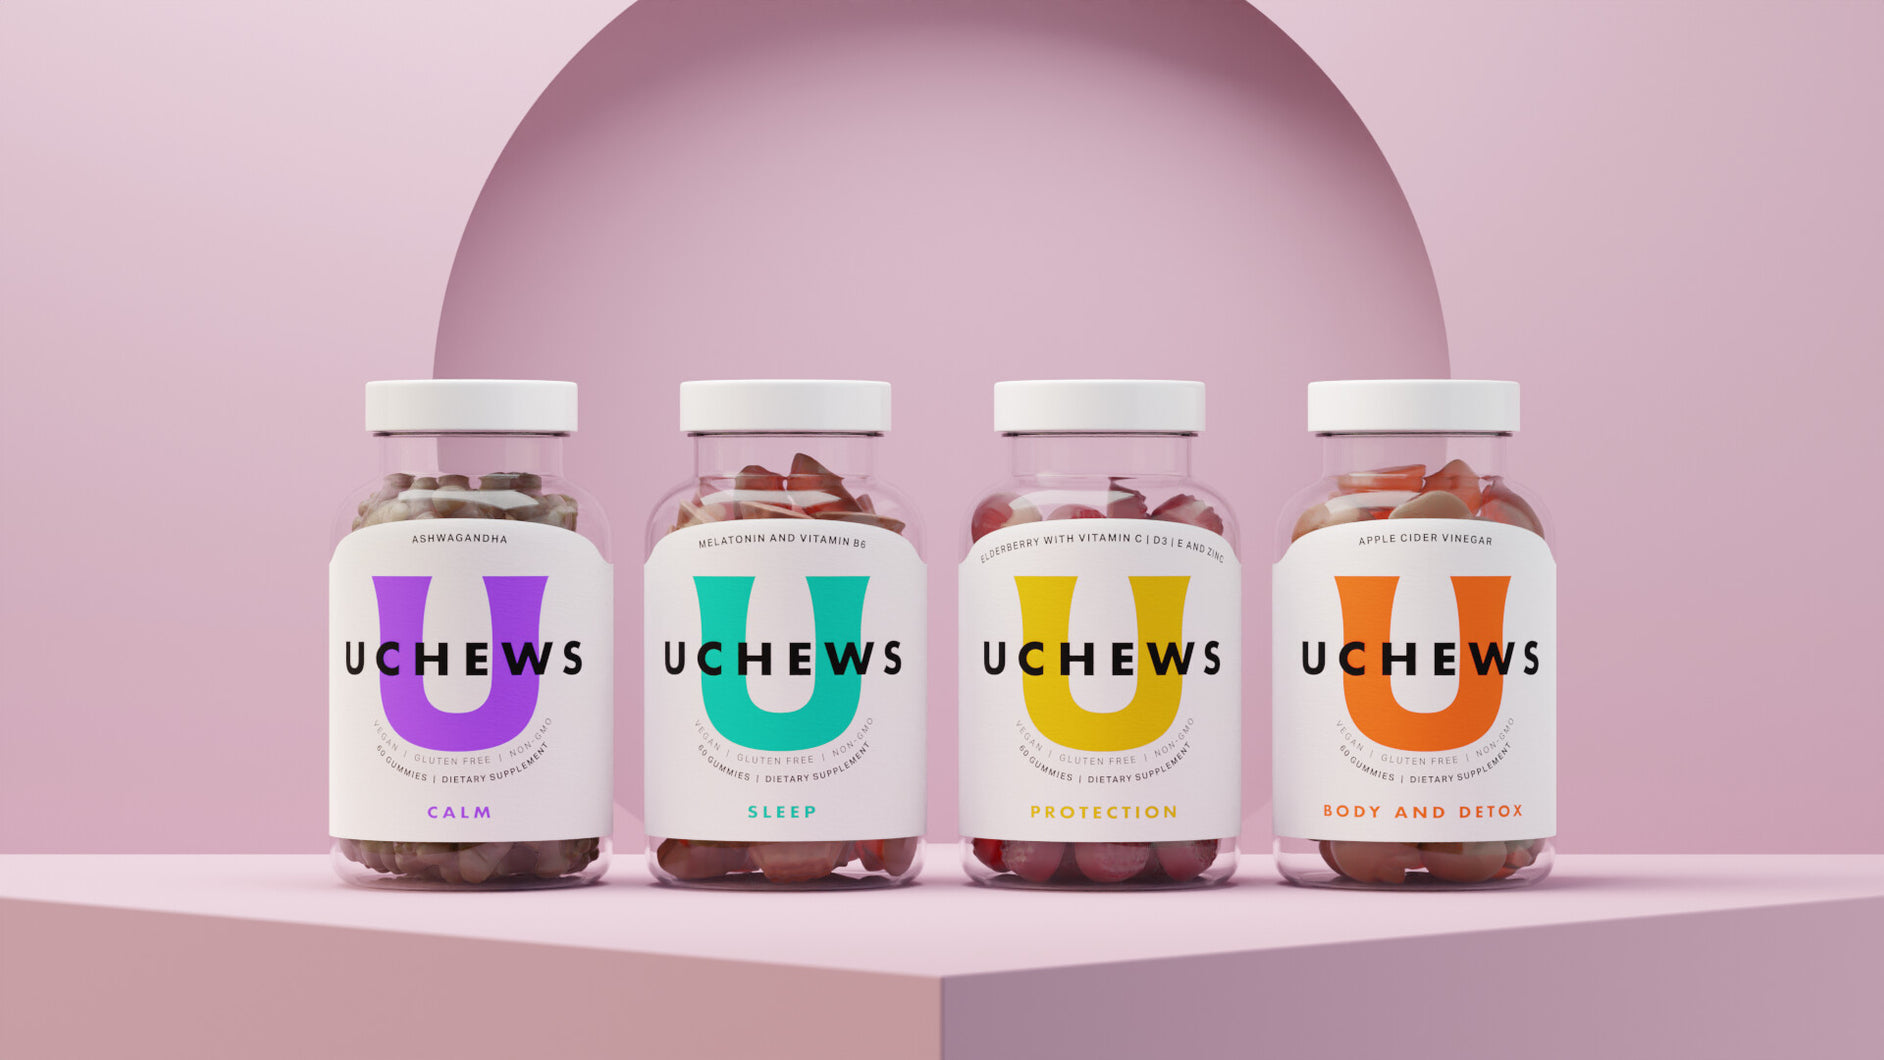 UCHEWS product range shot